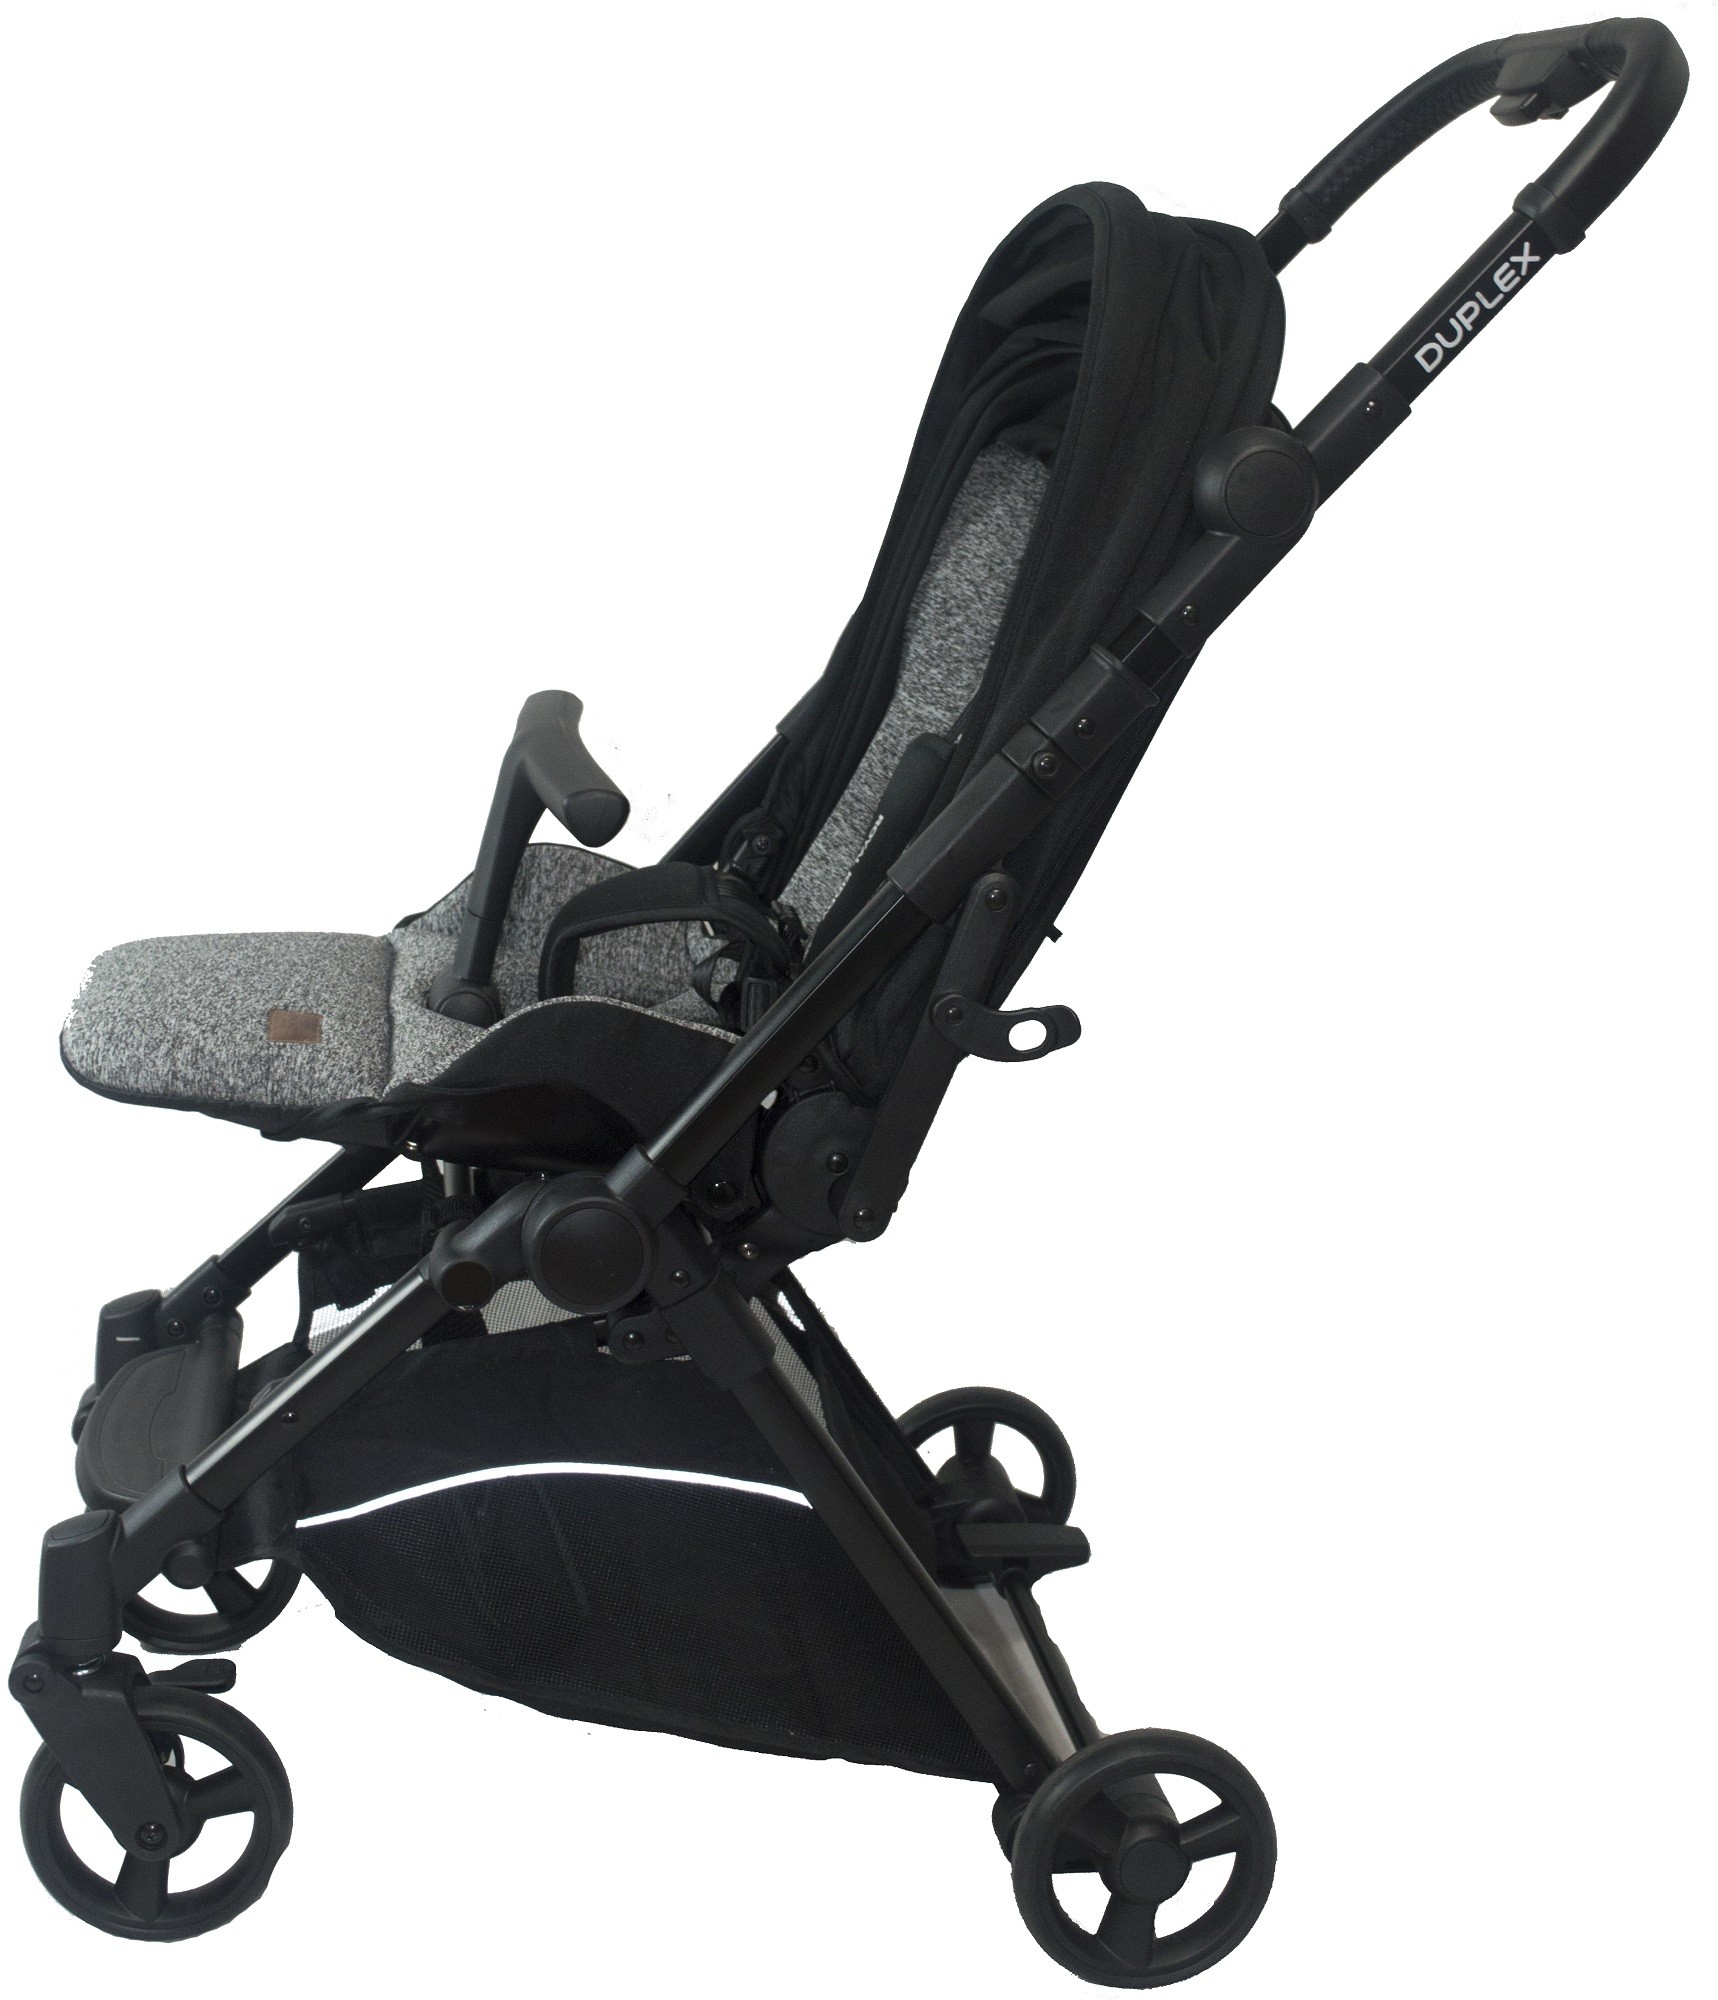 compact parent facing stroller